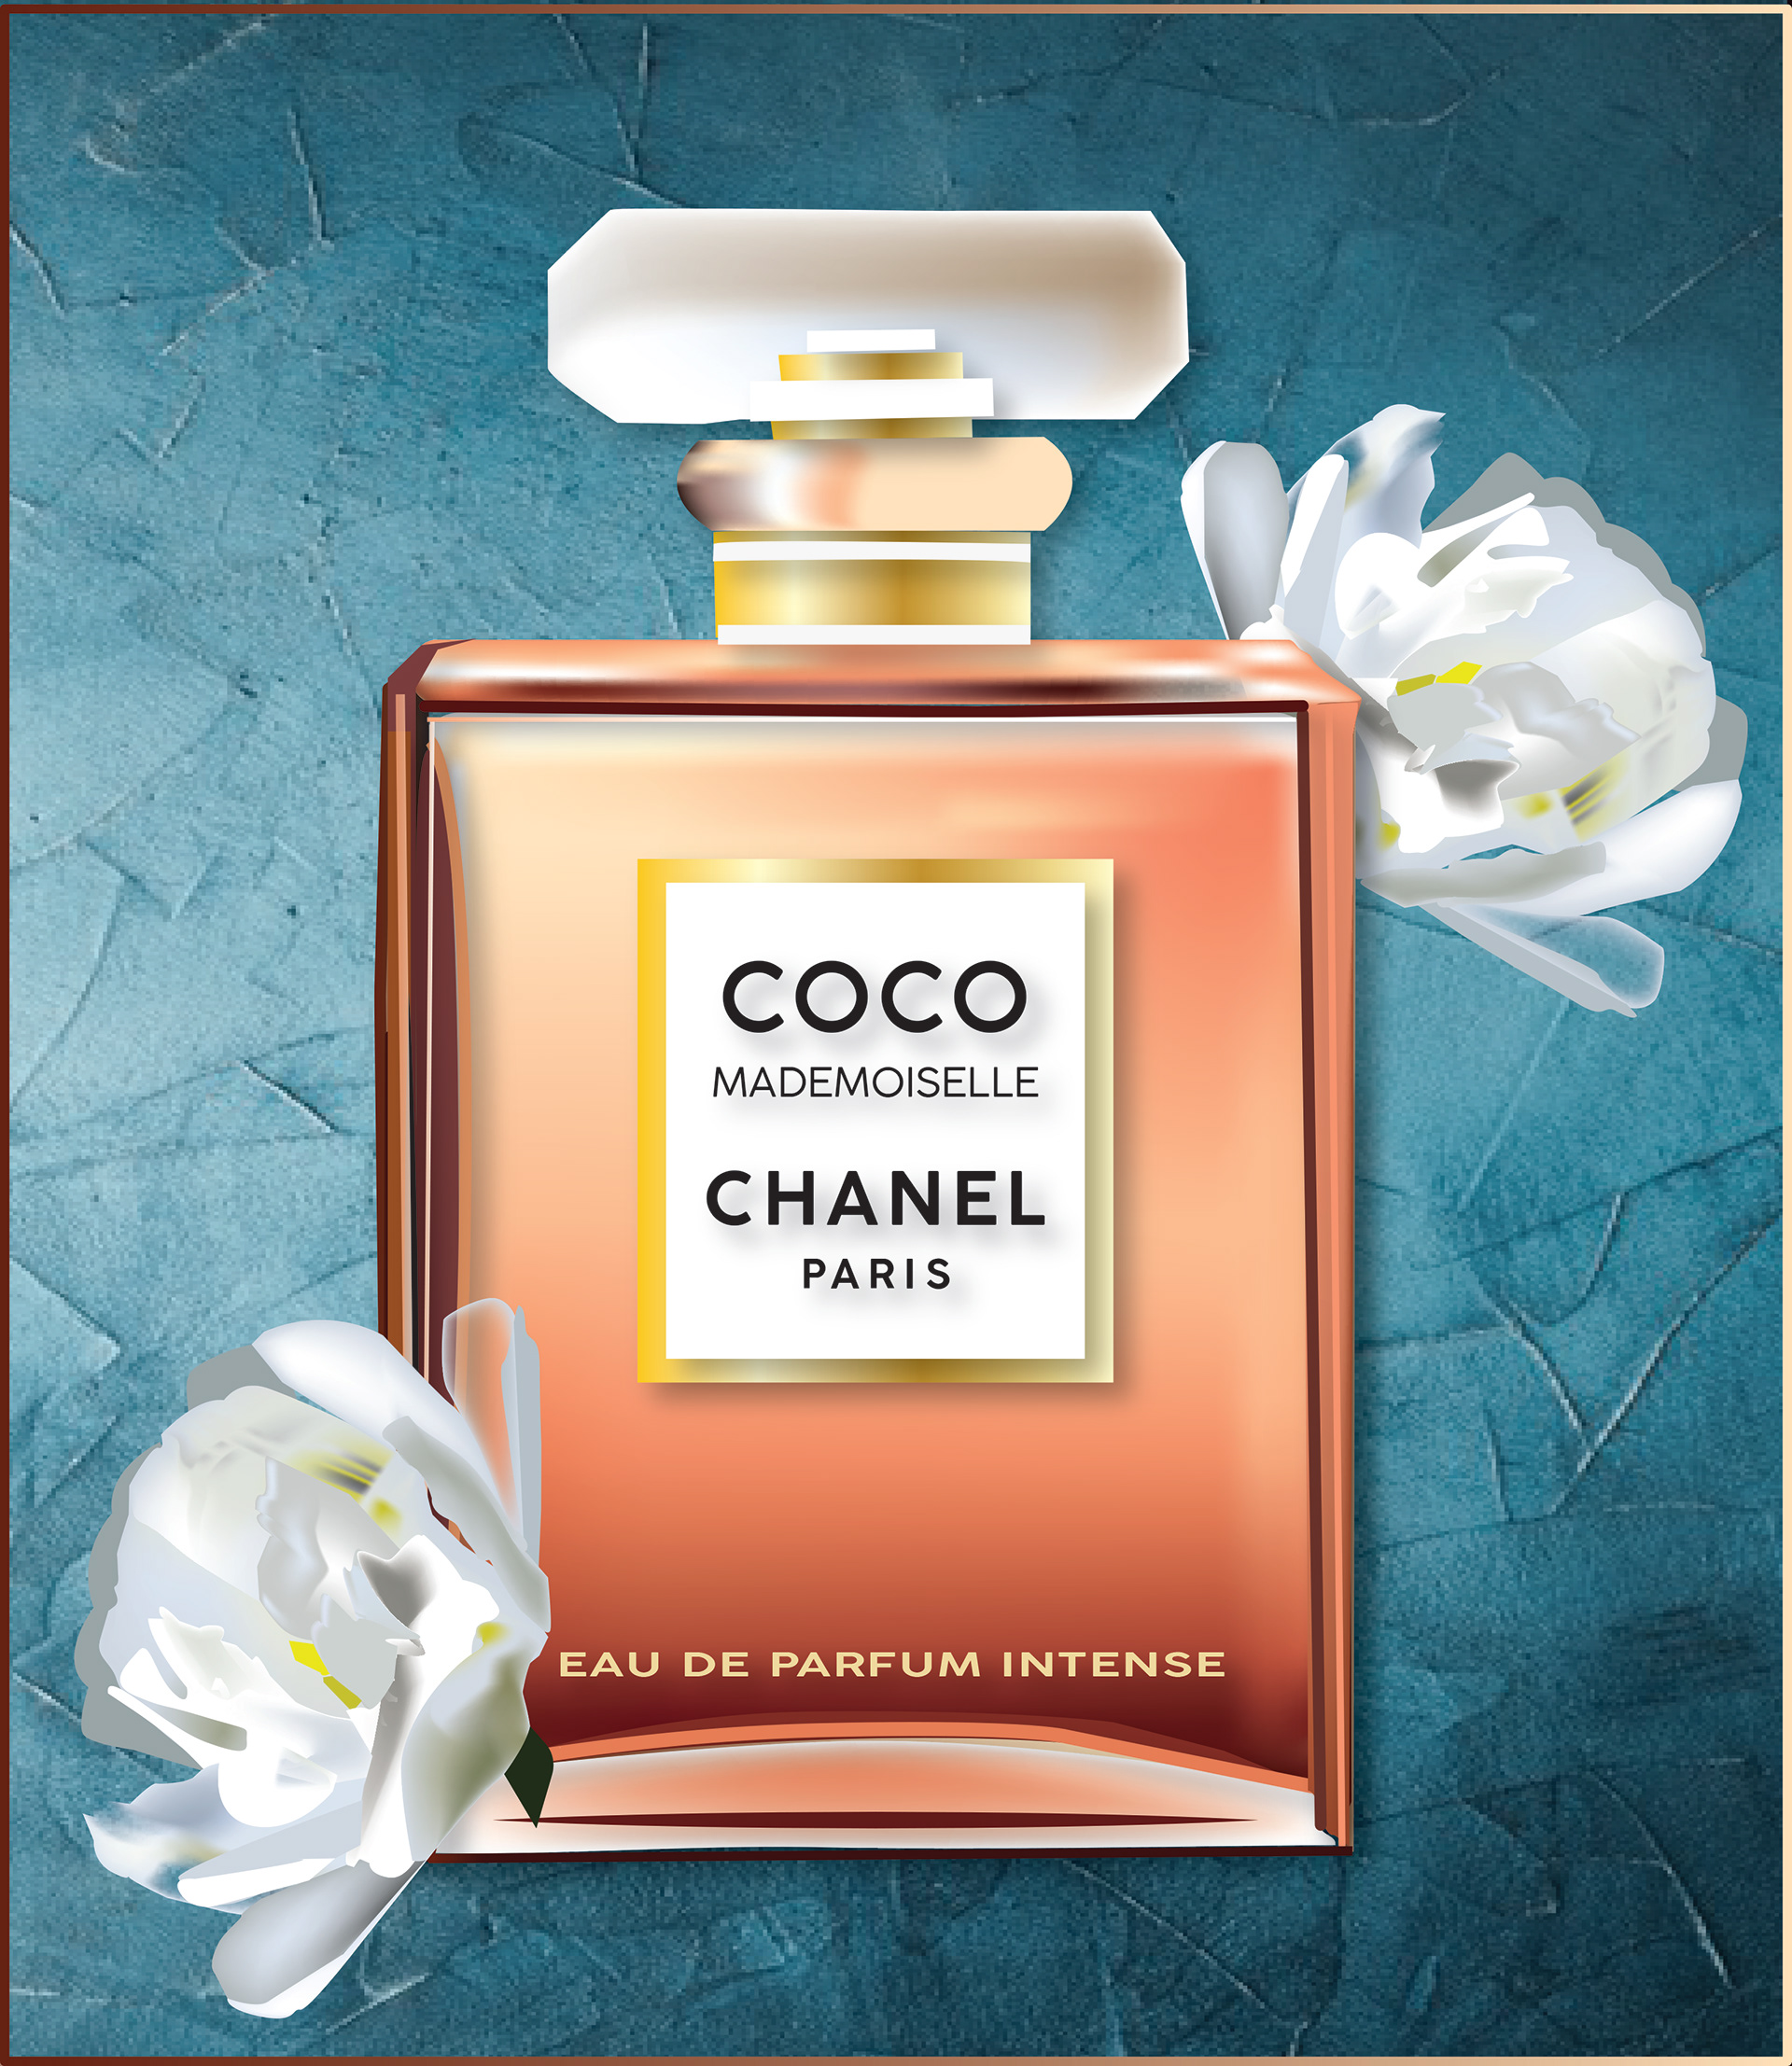 Liz Manns Coco Chanel Mademoiselle